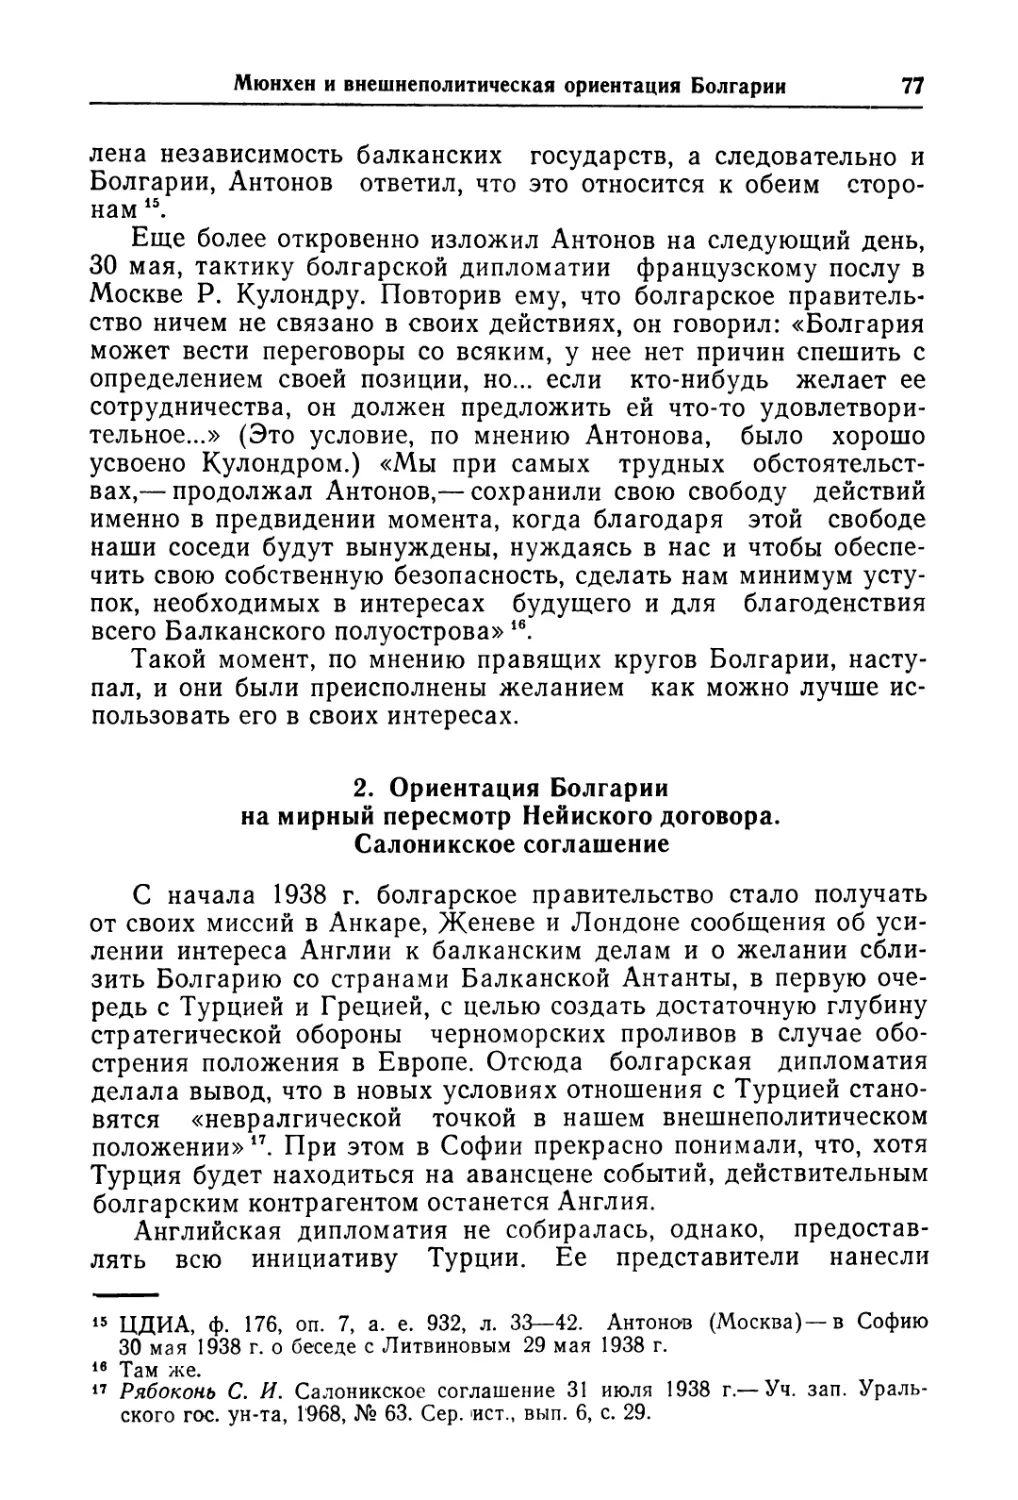 2. Ориентация Болгарии на мирный пересмотр Нейиского договора. Салоникское соглашение